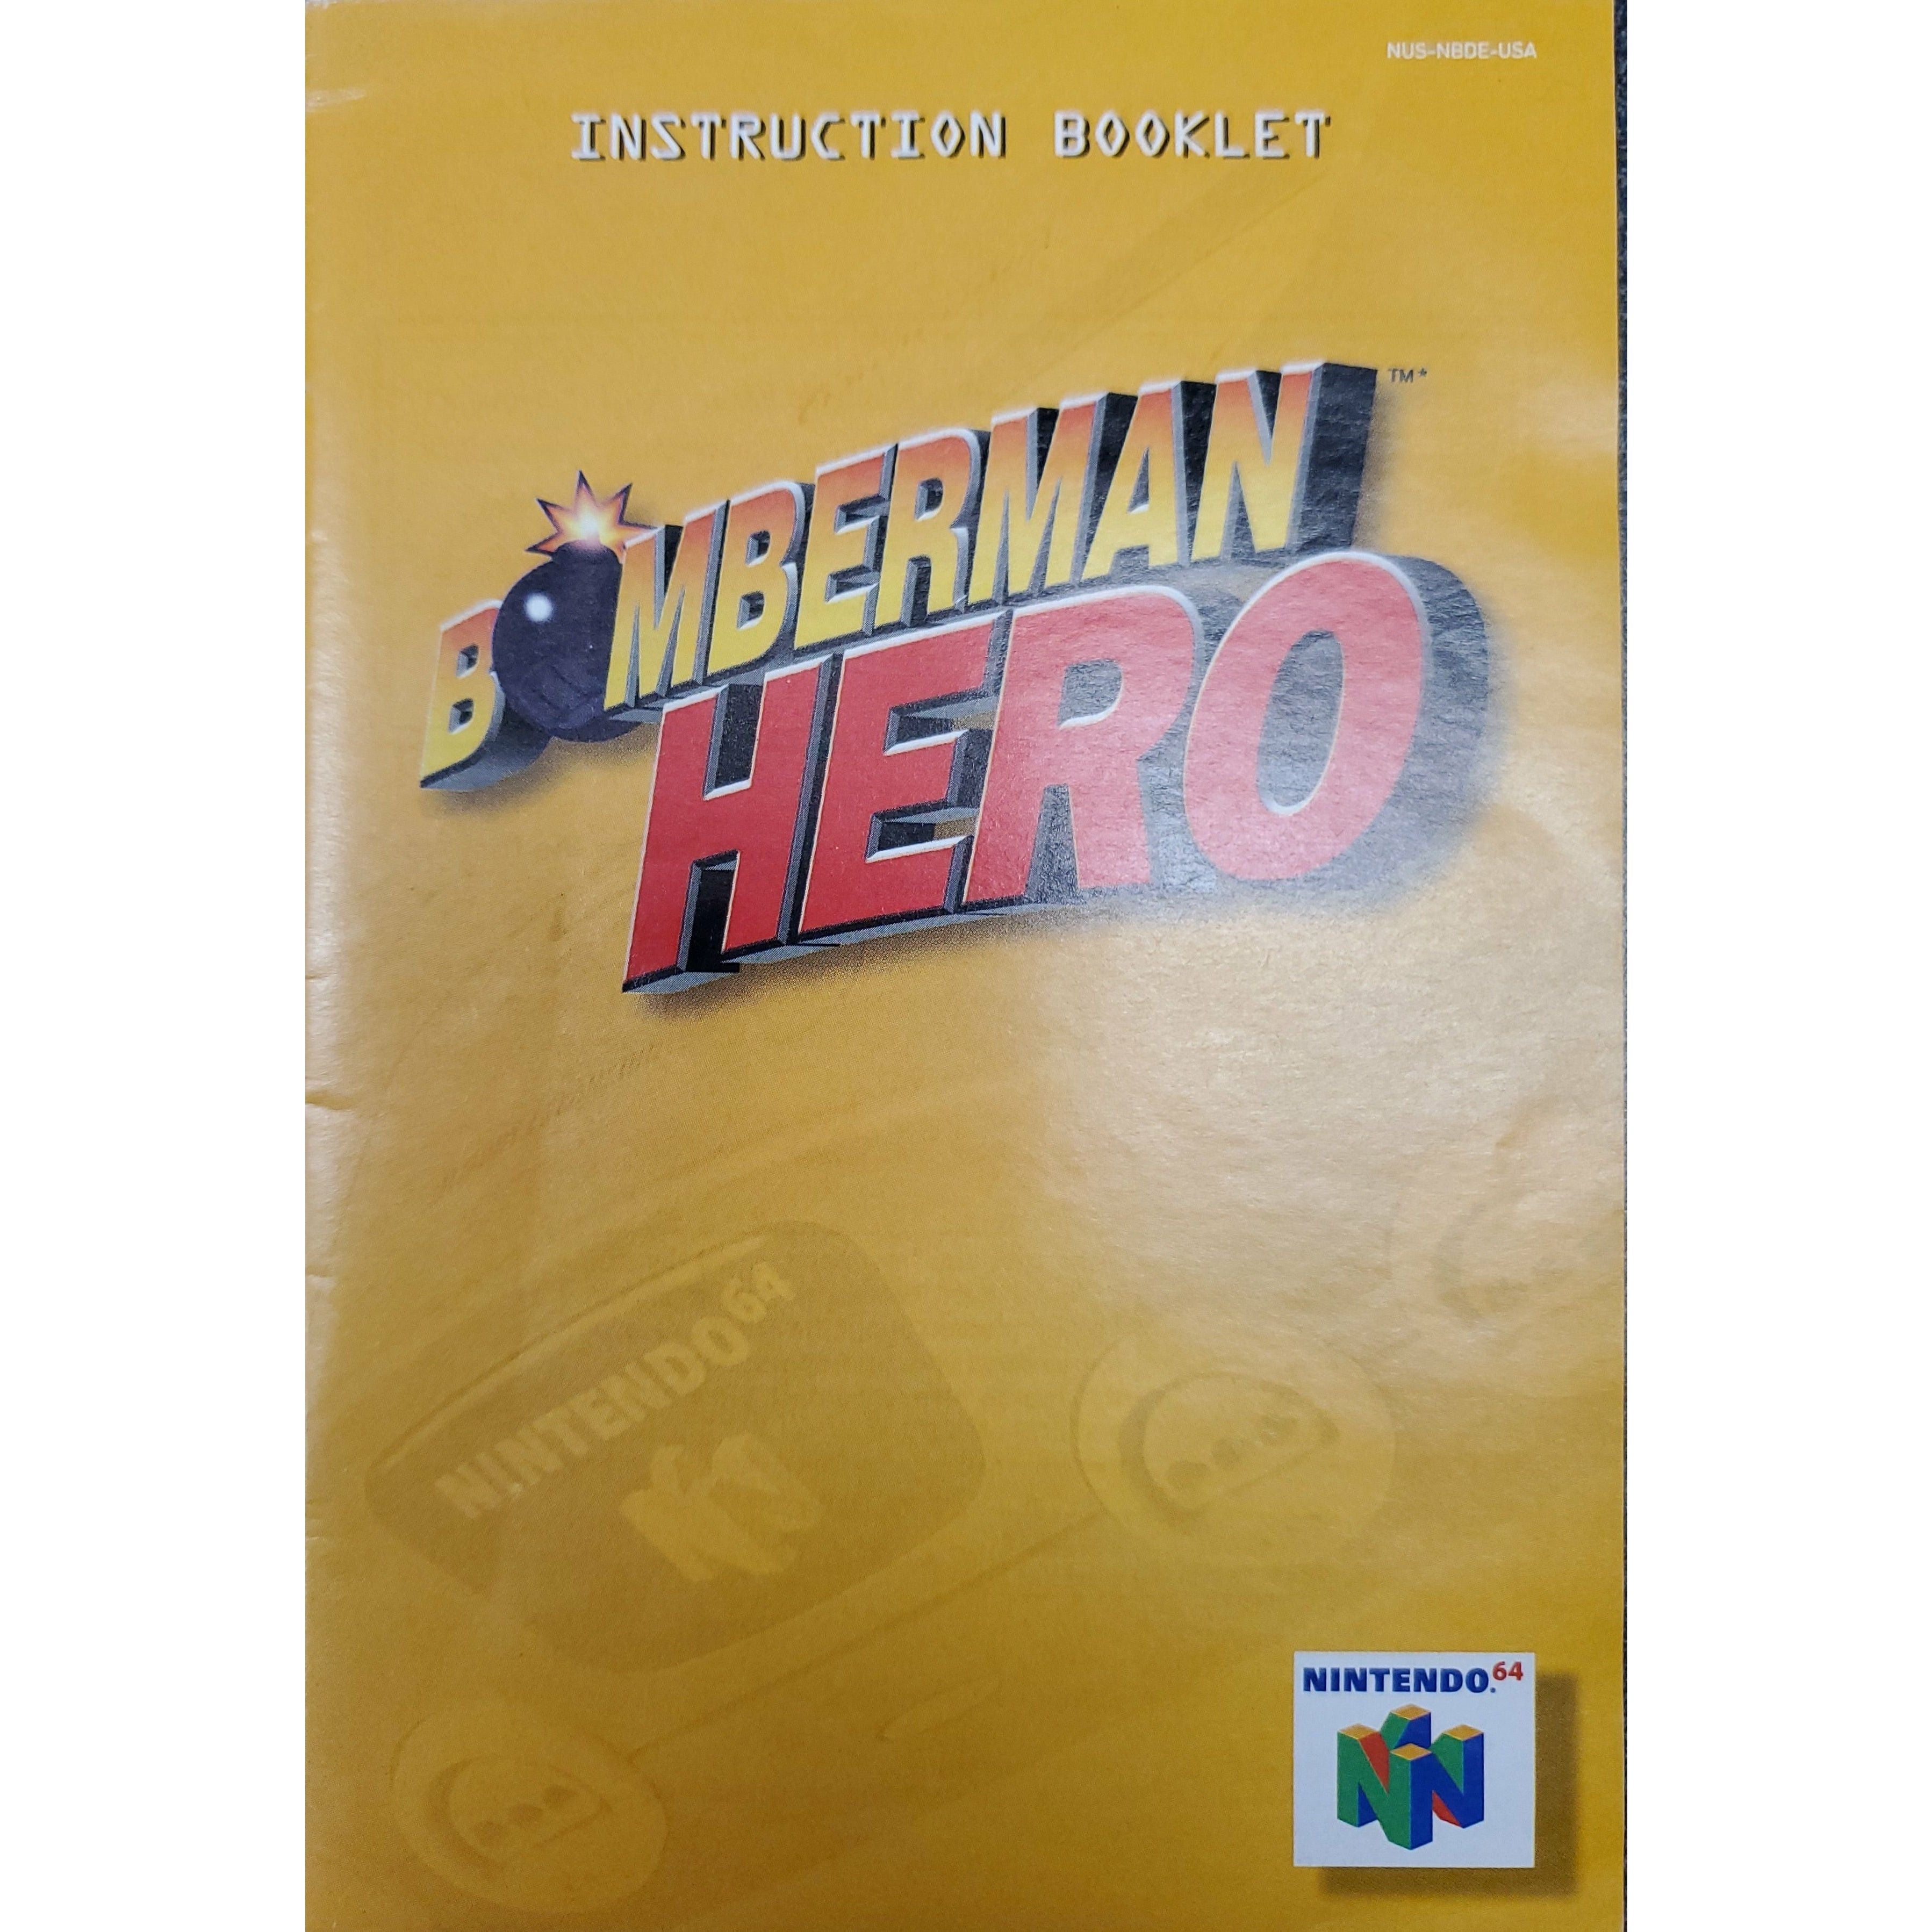 N64 - Bomberman Hero (Manual)